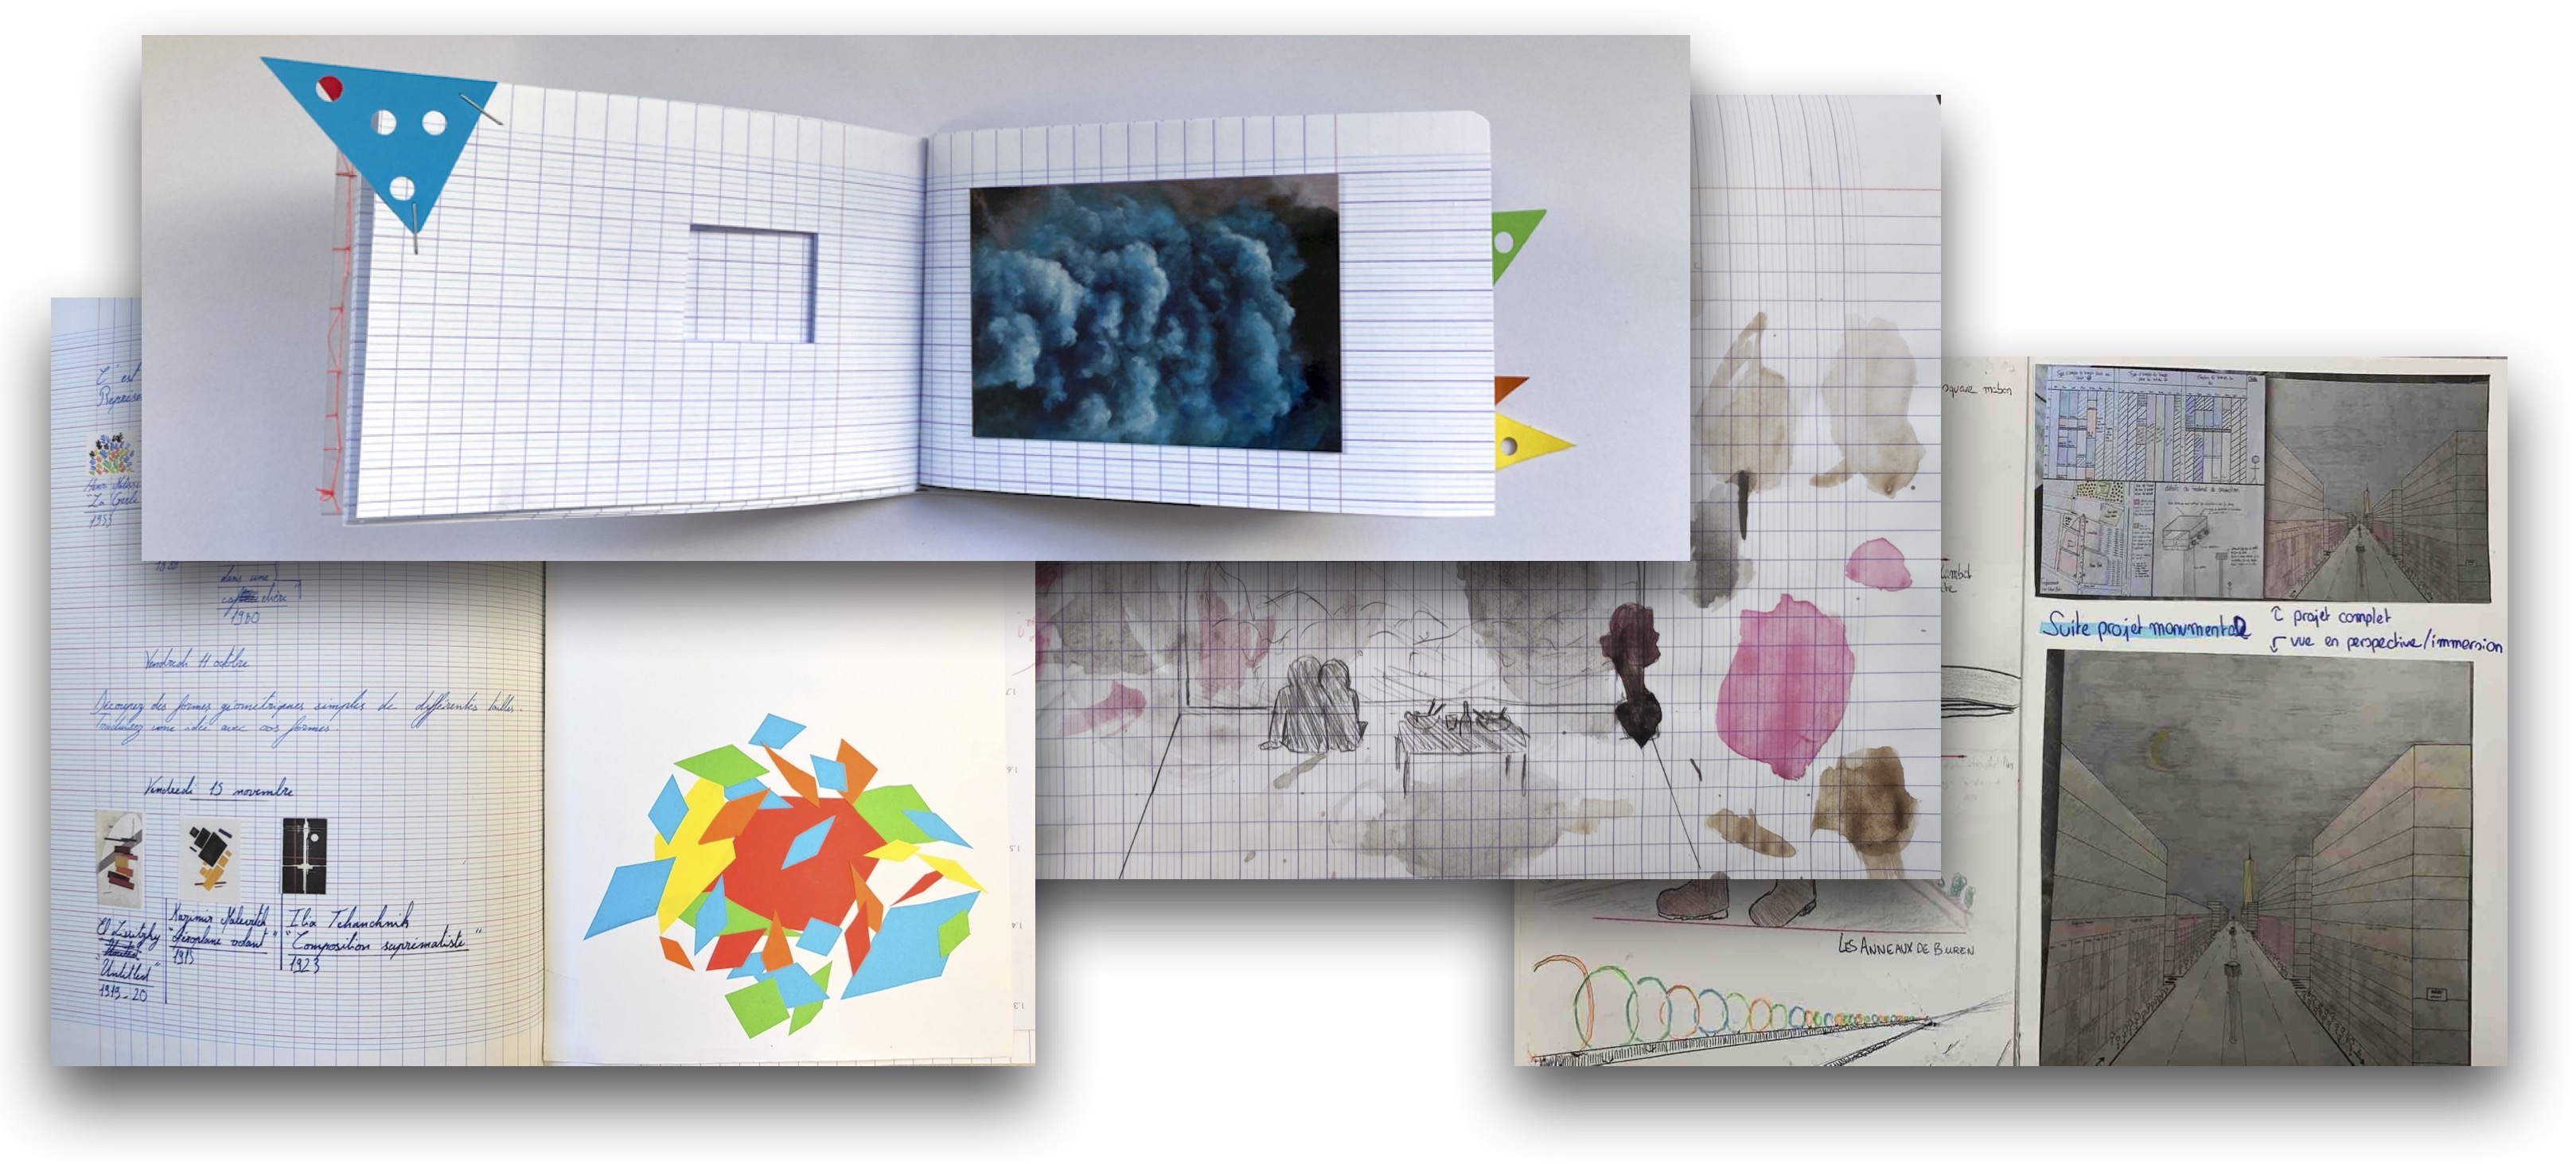 Portail pédagogique : arts plastiques - InSitu - le cahier d'arts